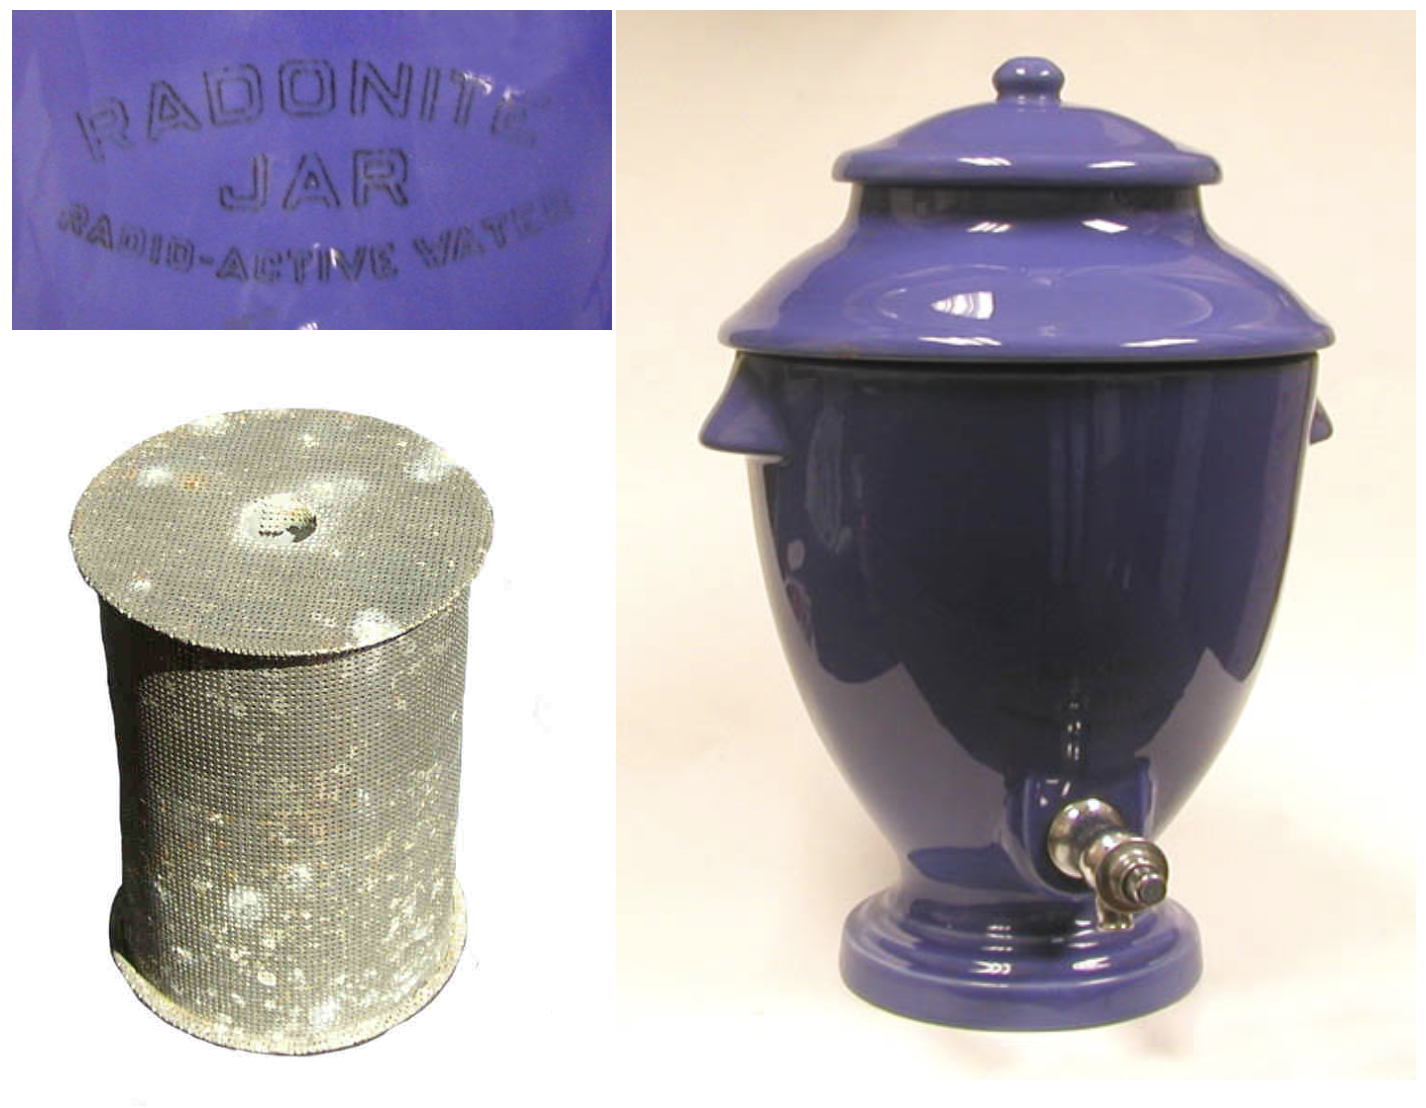 Radonite Jar (early 1930s)